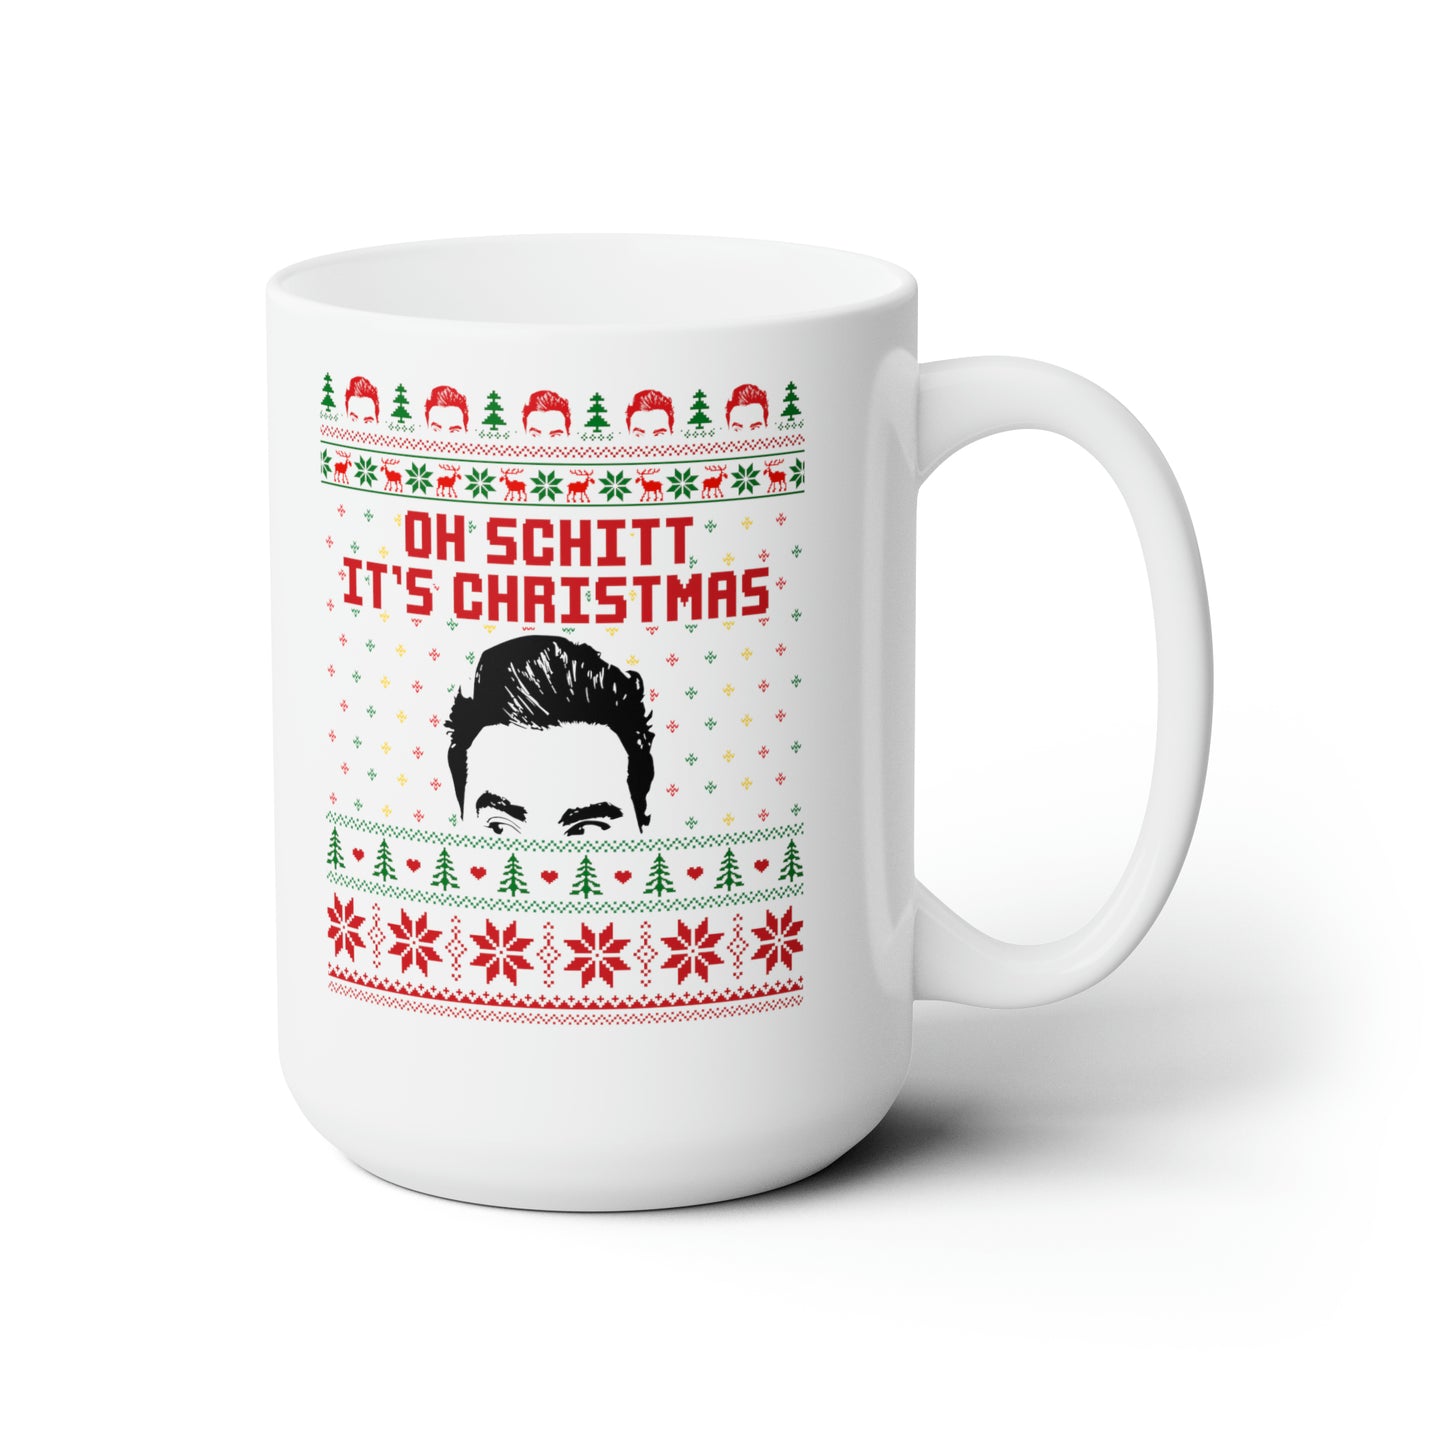 Oh Schitt it's Christmas Ceramic Mug 15oz